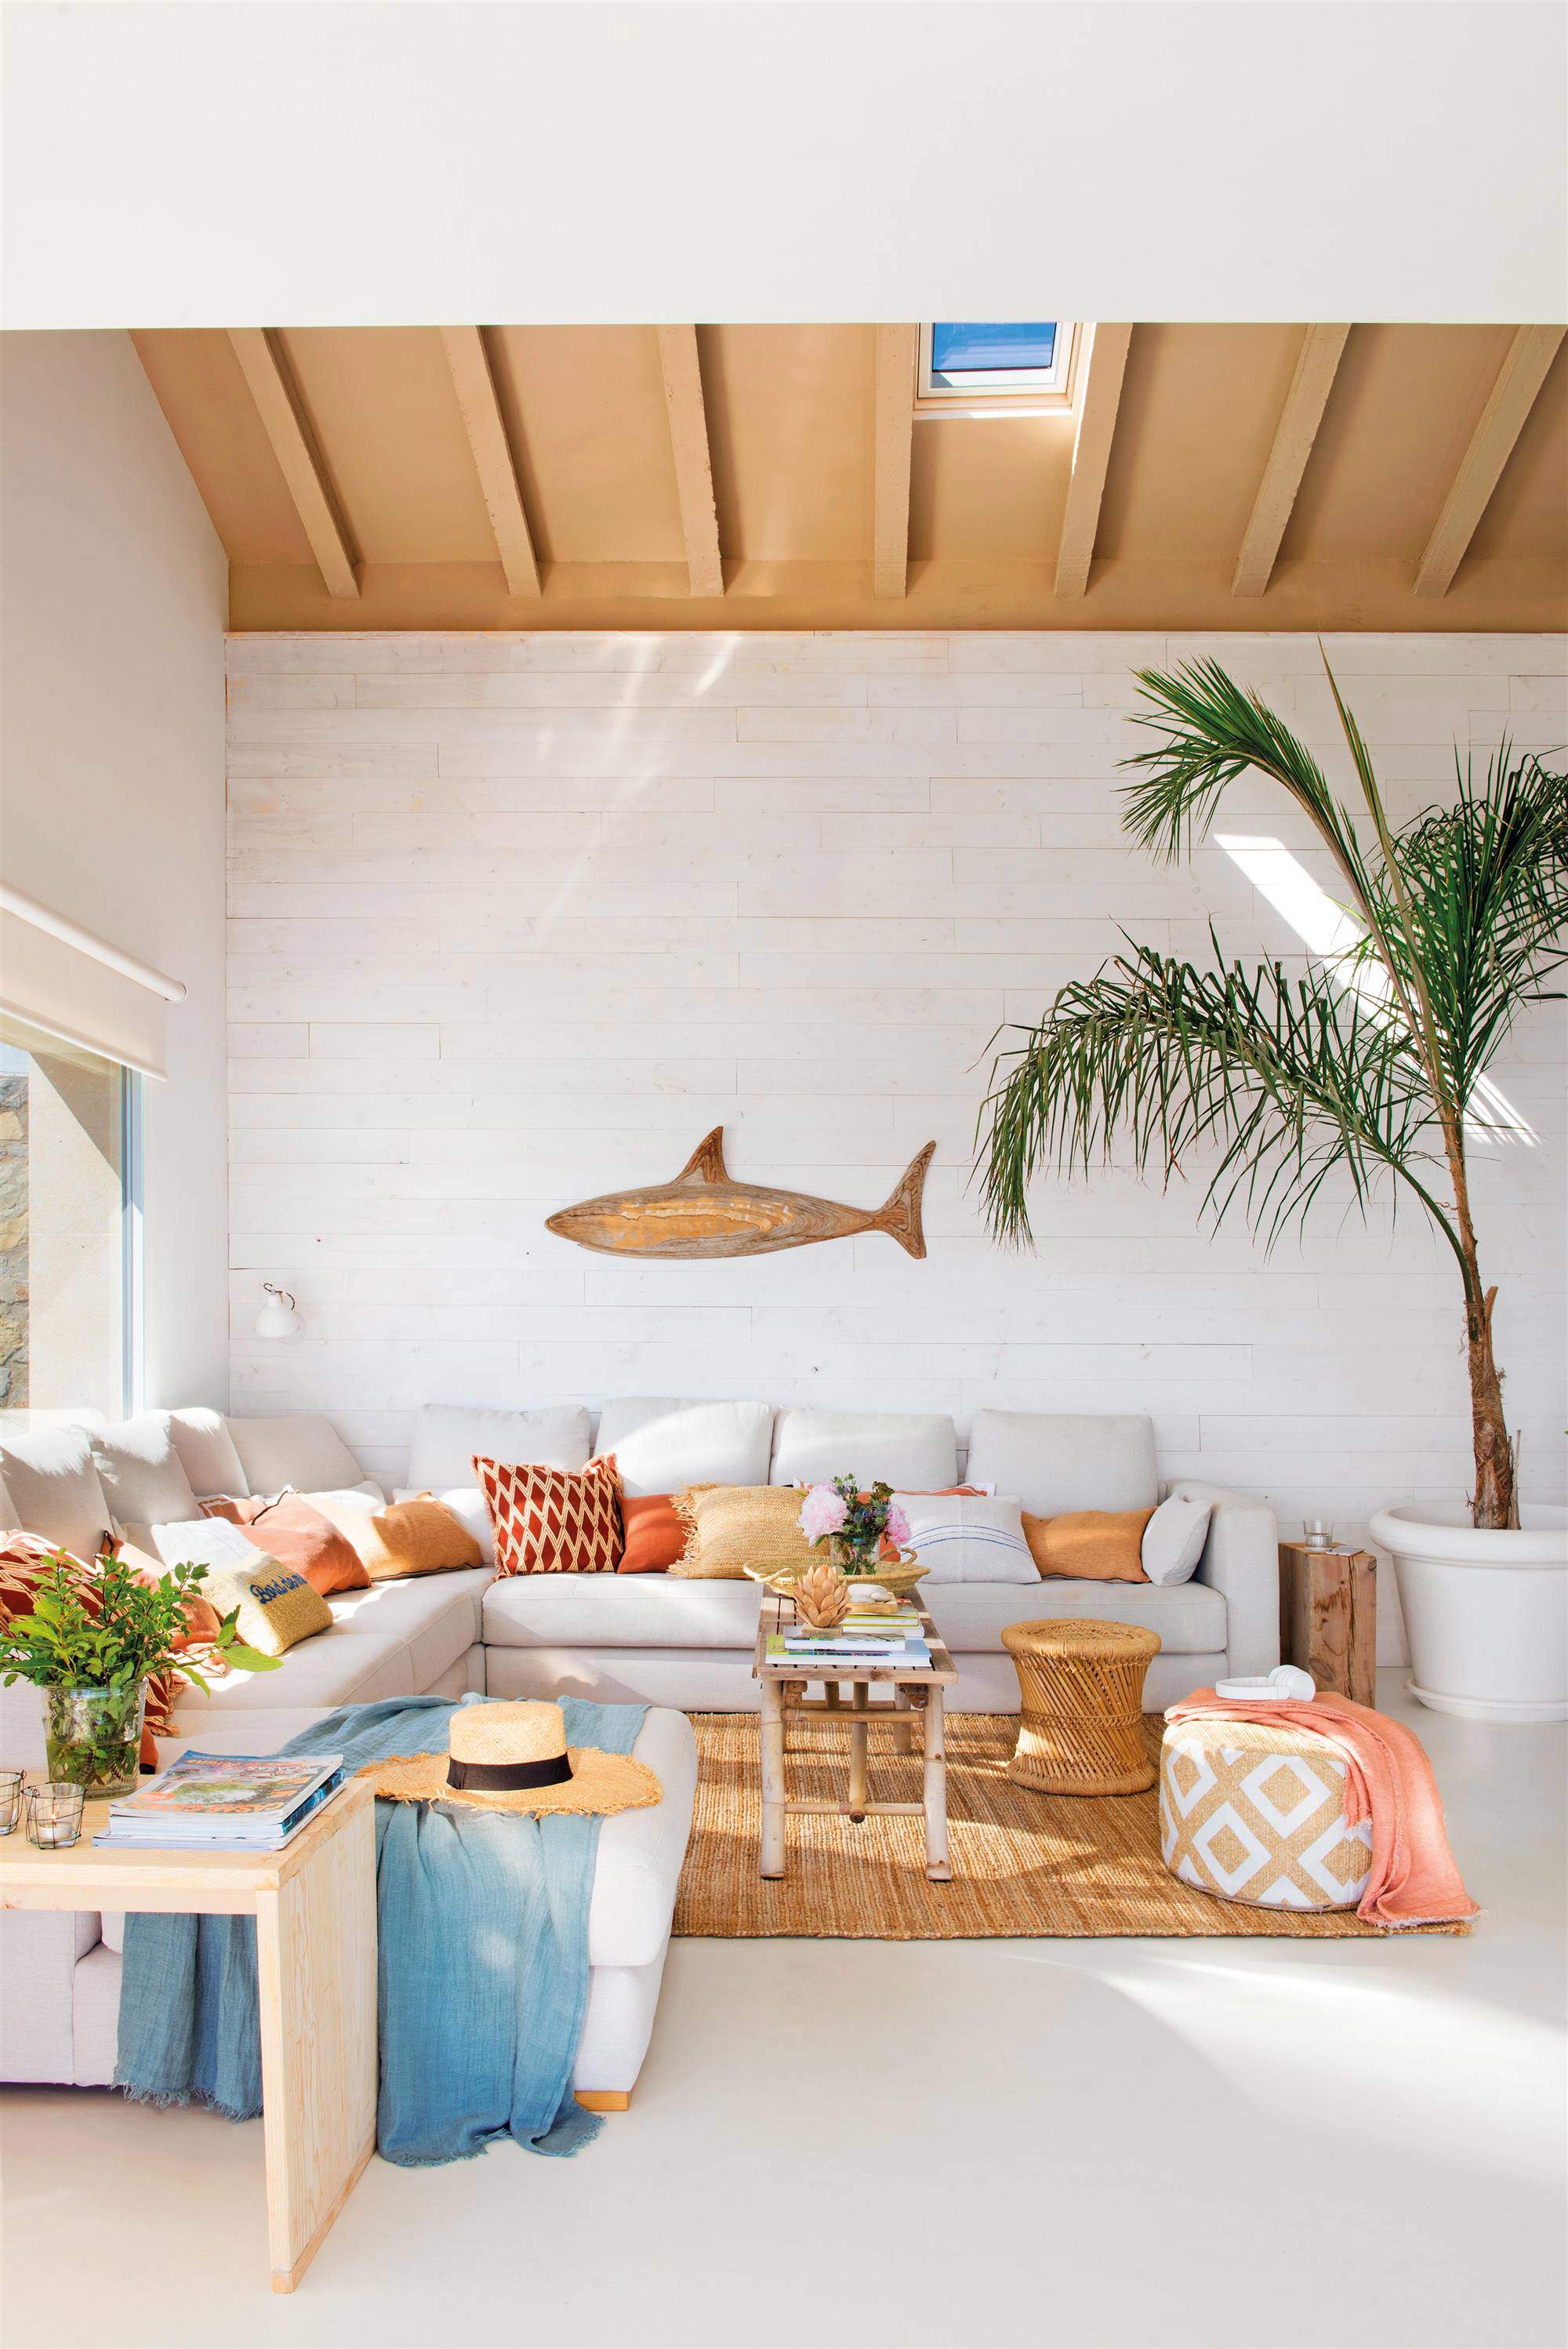 Decoración de verano salón de verano con techo de madera y claraboya.